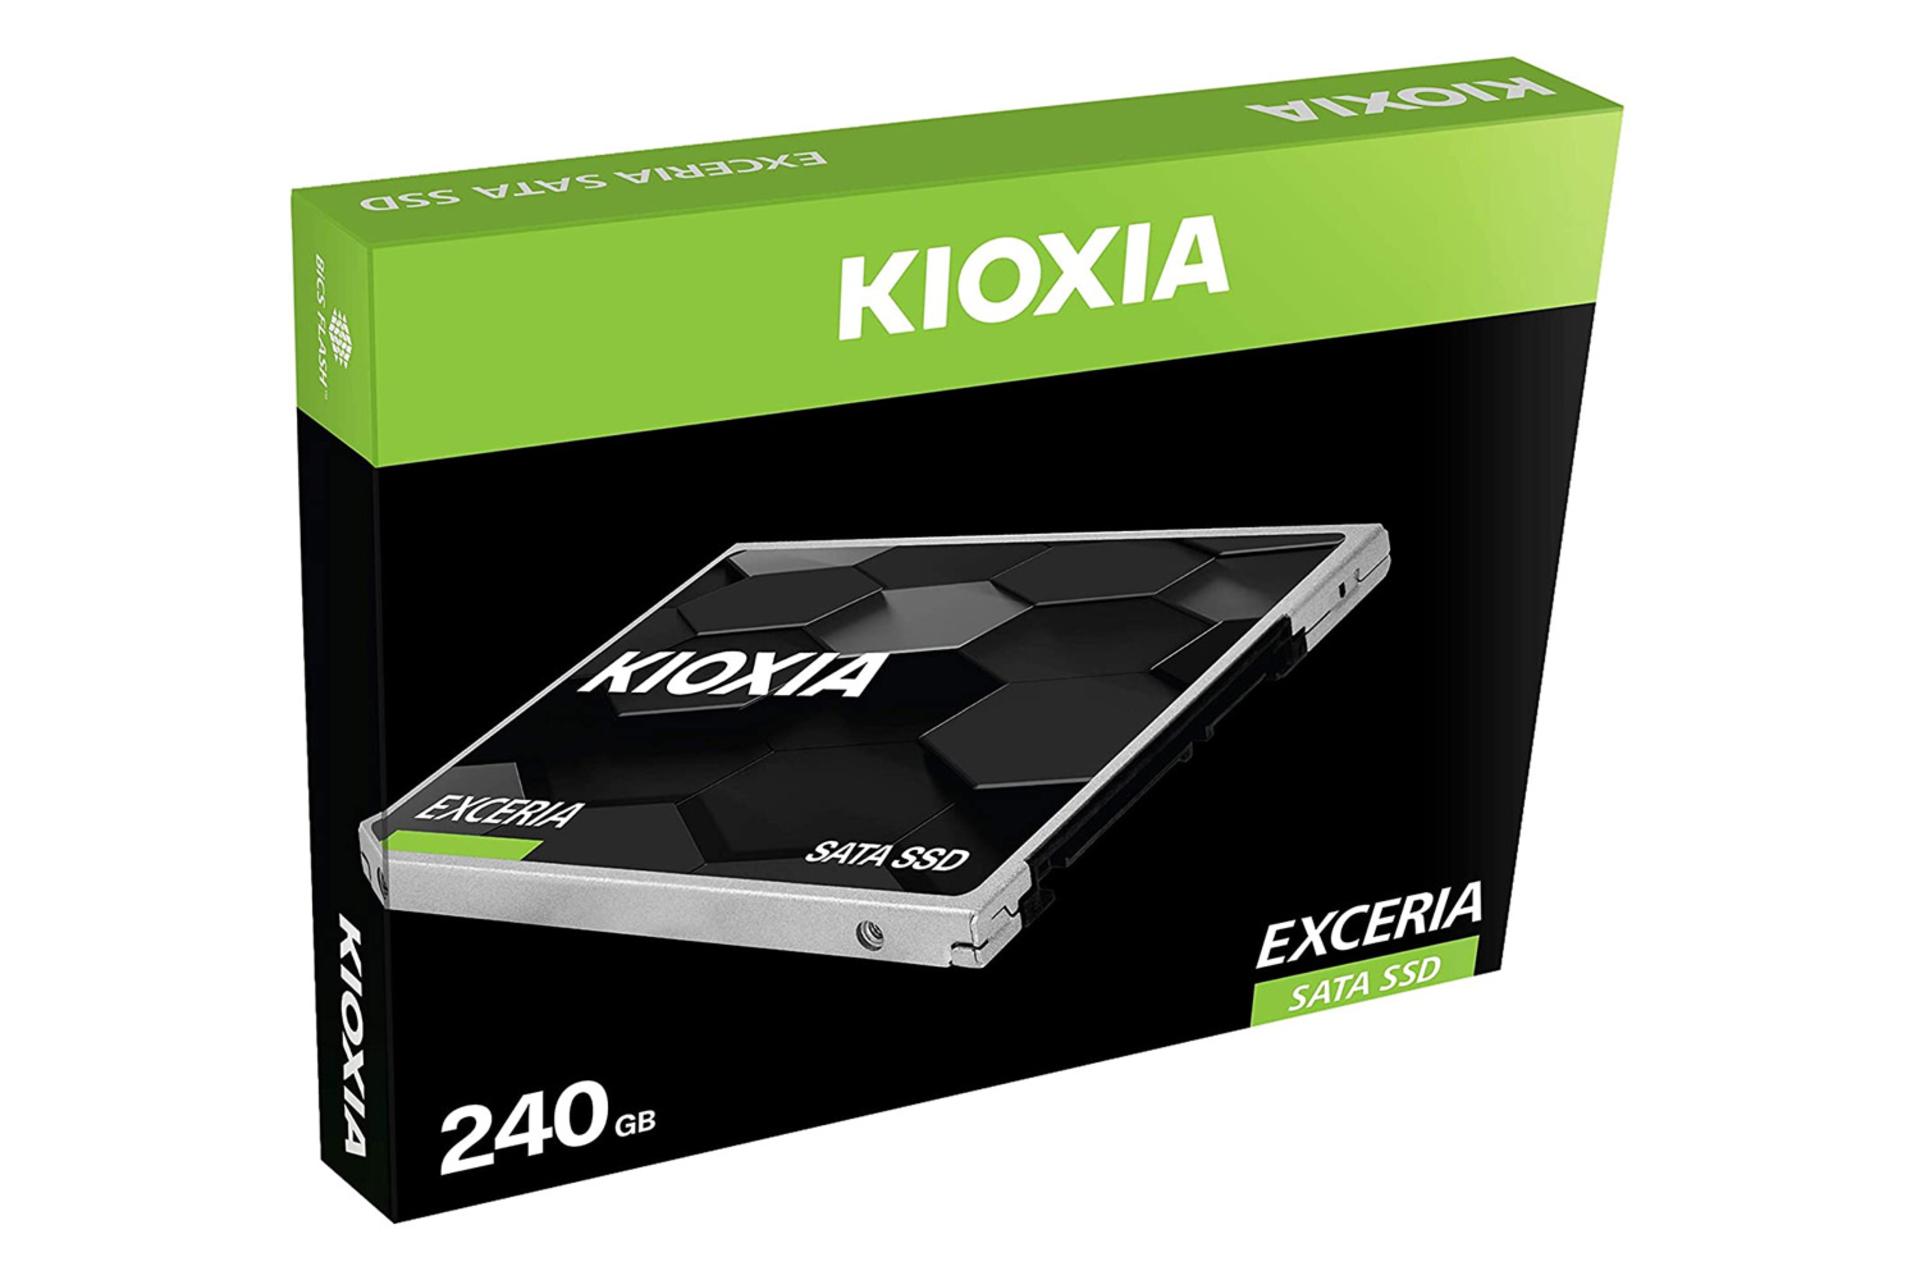 جعبه SSD کیوکسیا EXCERIA SATA 2.5 Inch ظرفیت 240 گیگابایت